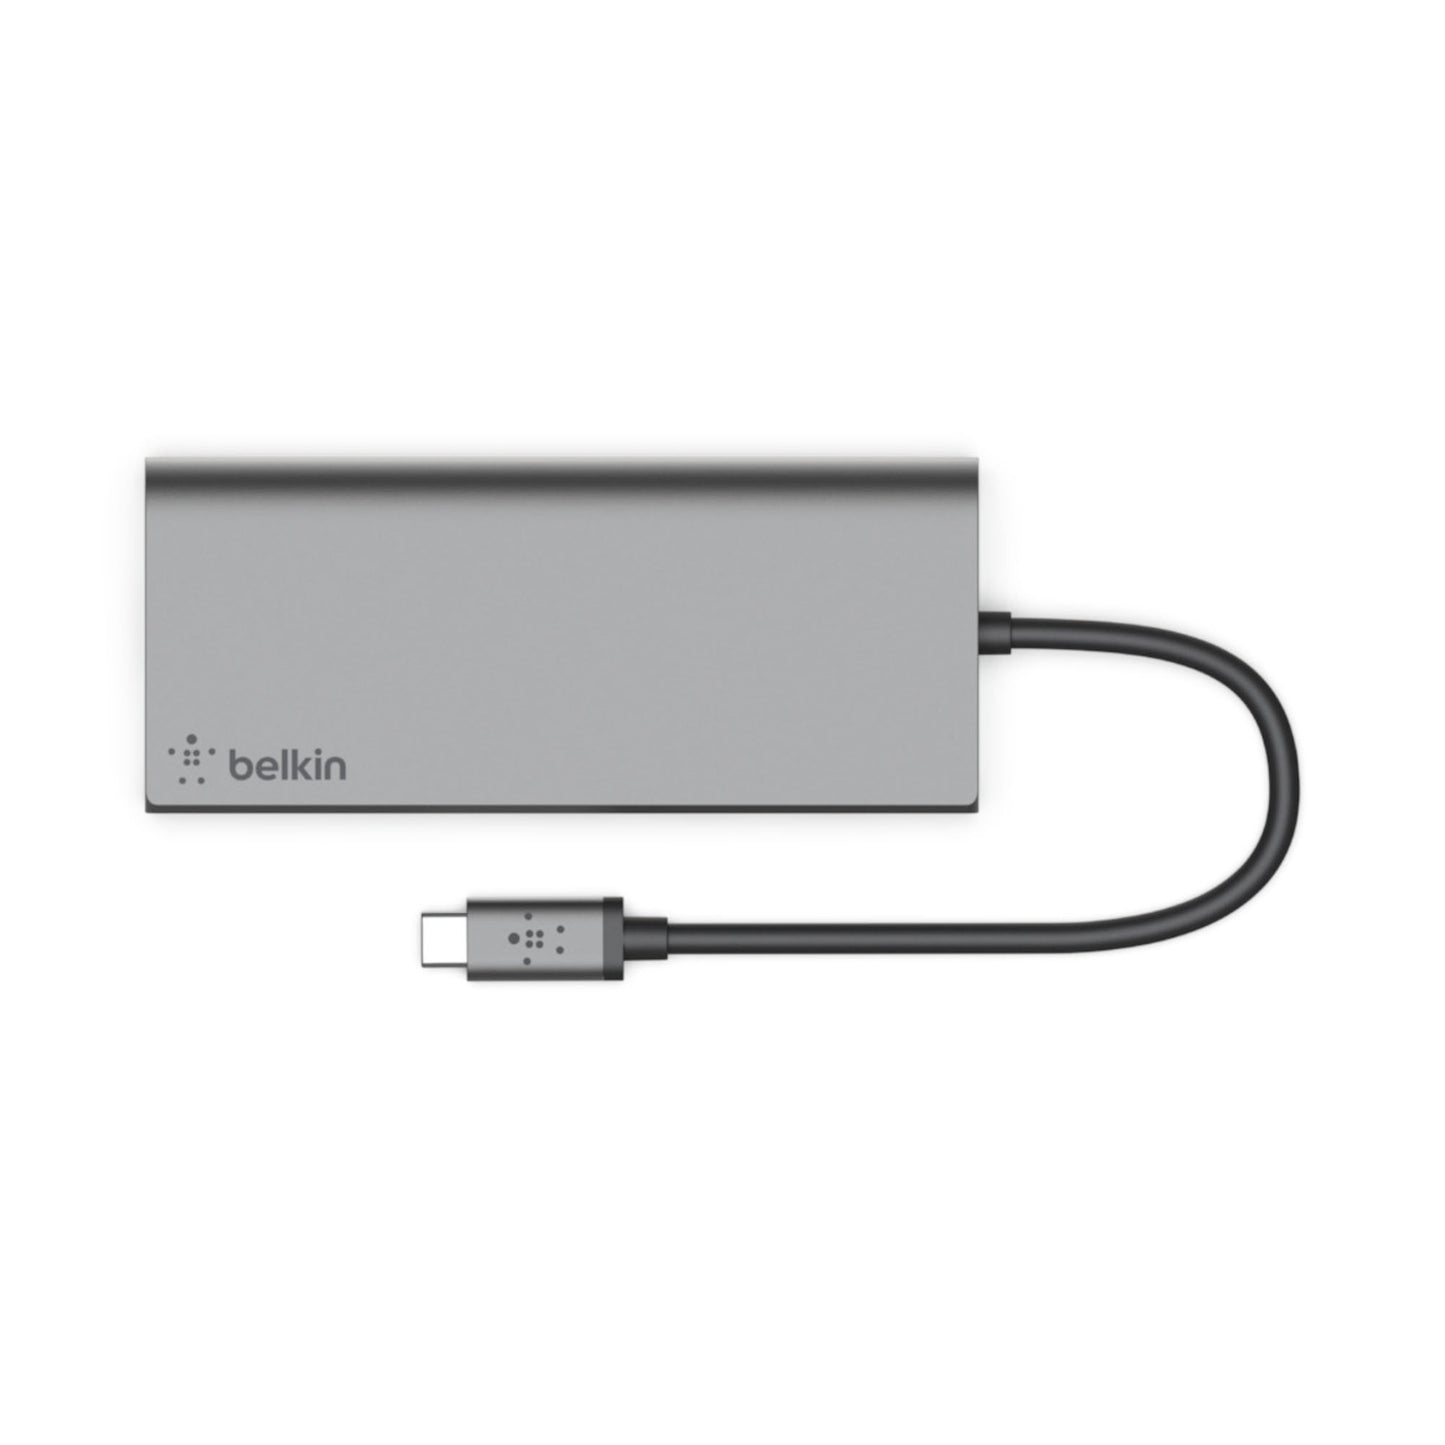 BELKIN USB-C 6-in-1 Multimedia Hub - Space Gray